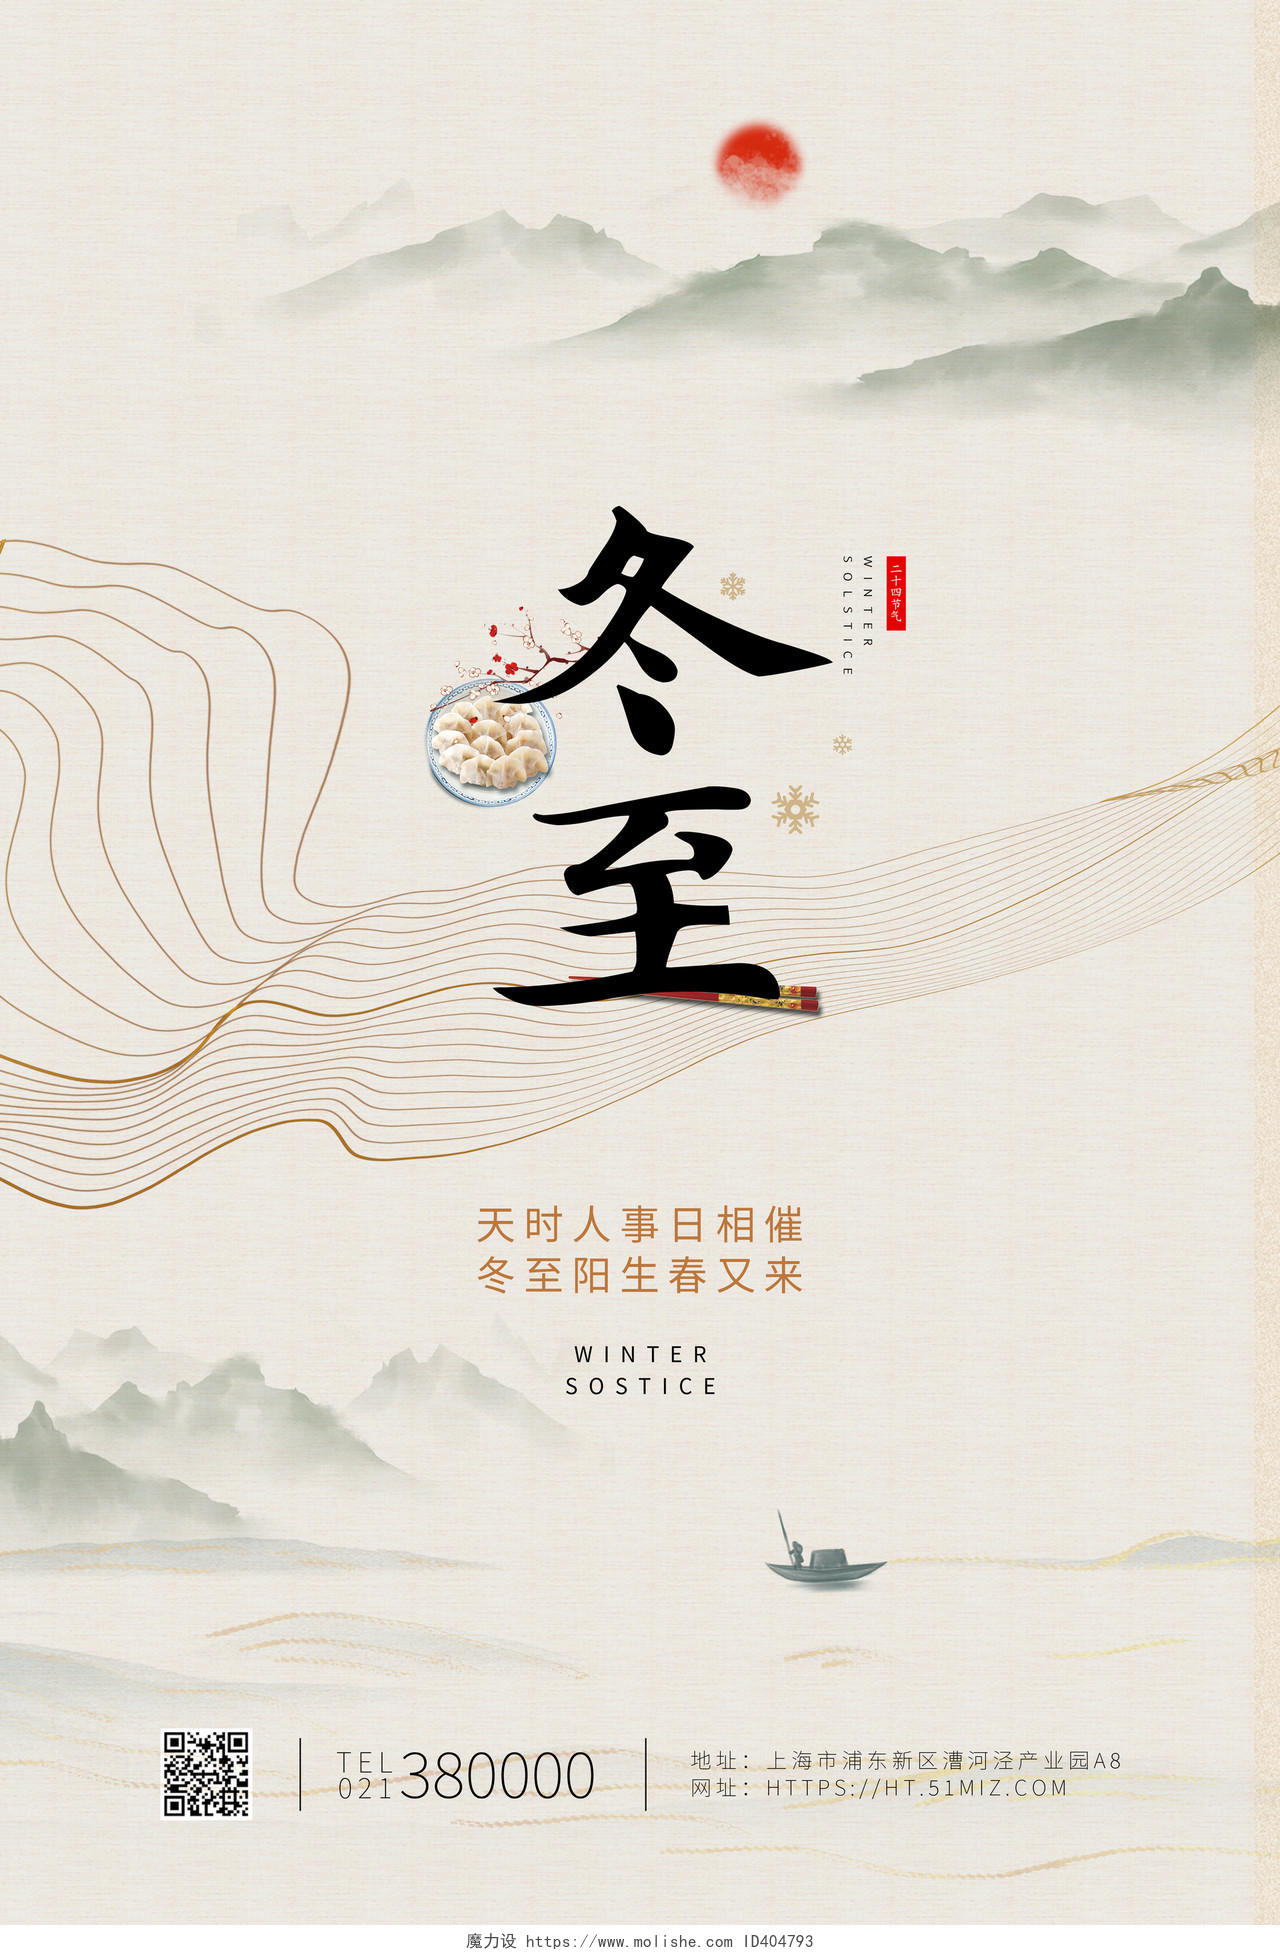 白色中国风冬至二十四节气宣传海报24二十四节气冬至